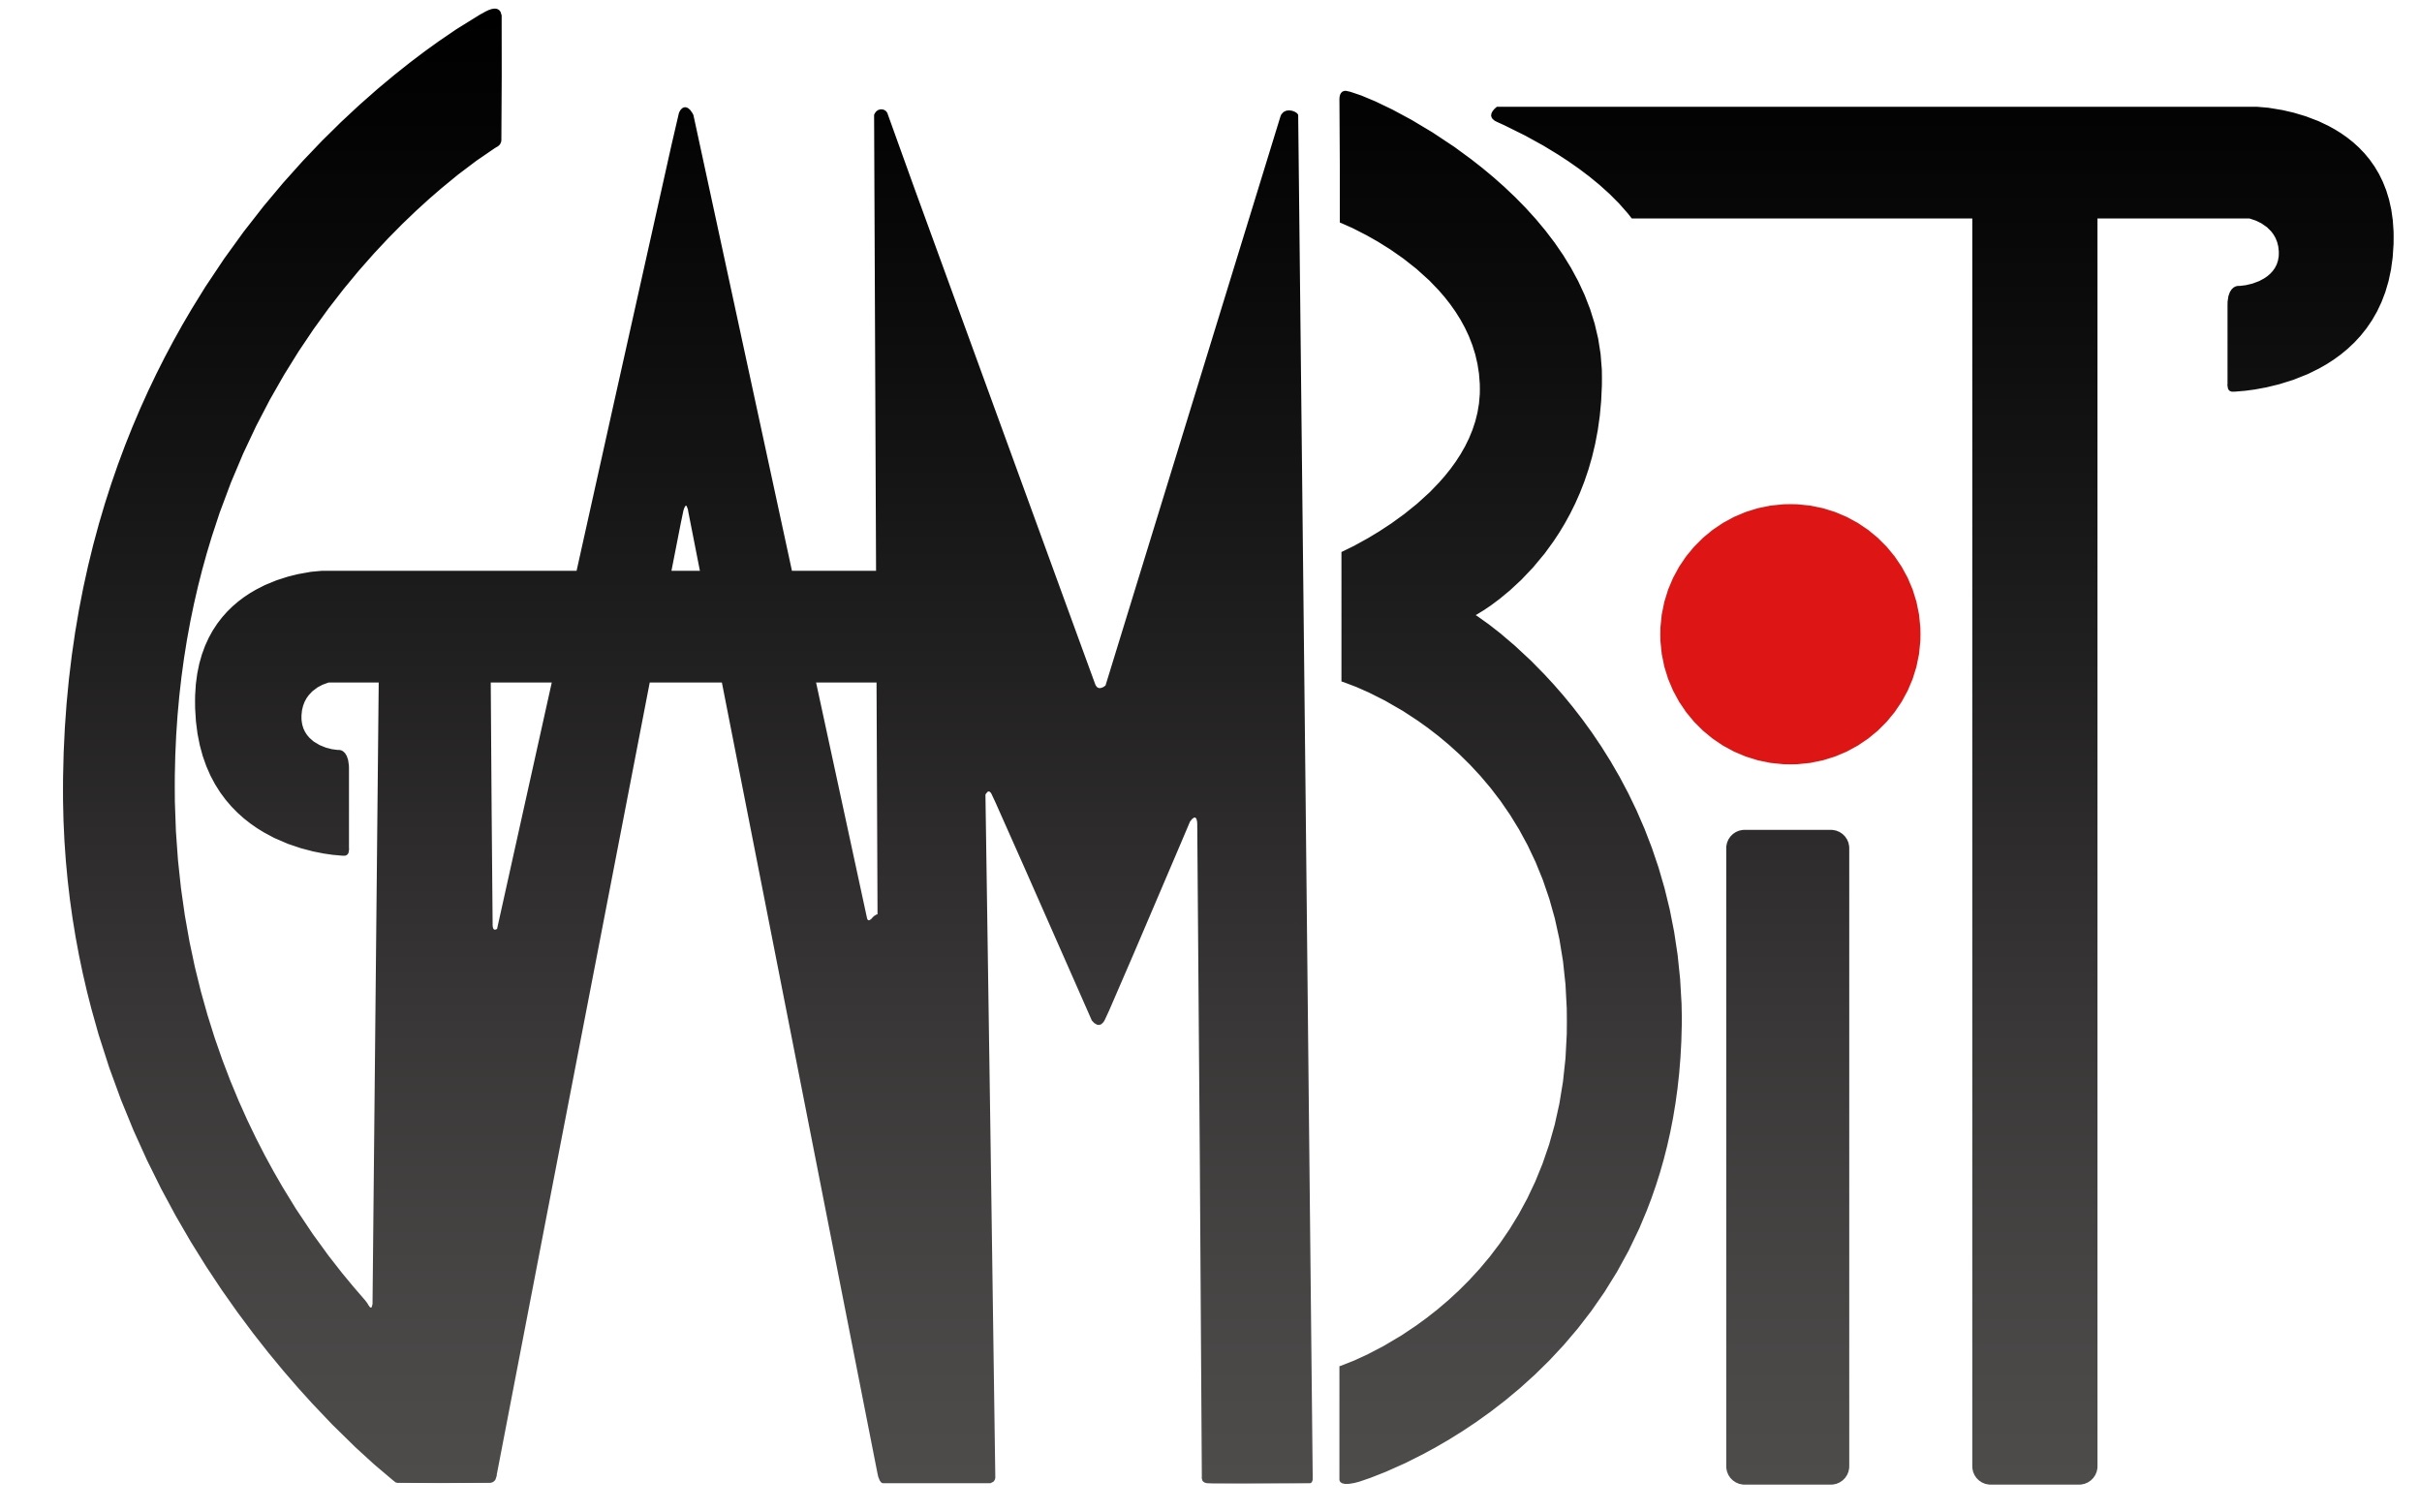 GAMBIT Logo.jpg 6f36a7aa9db84969b6ccc65e378bf840